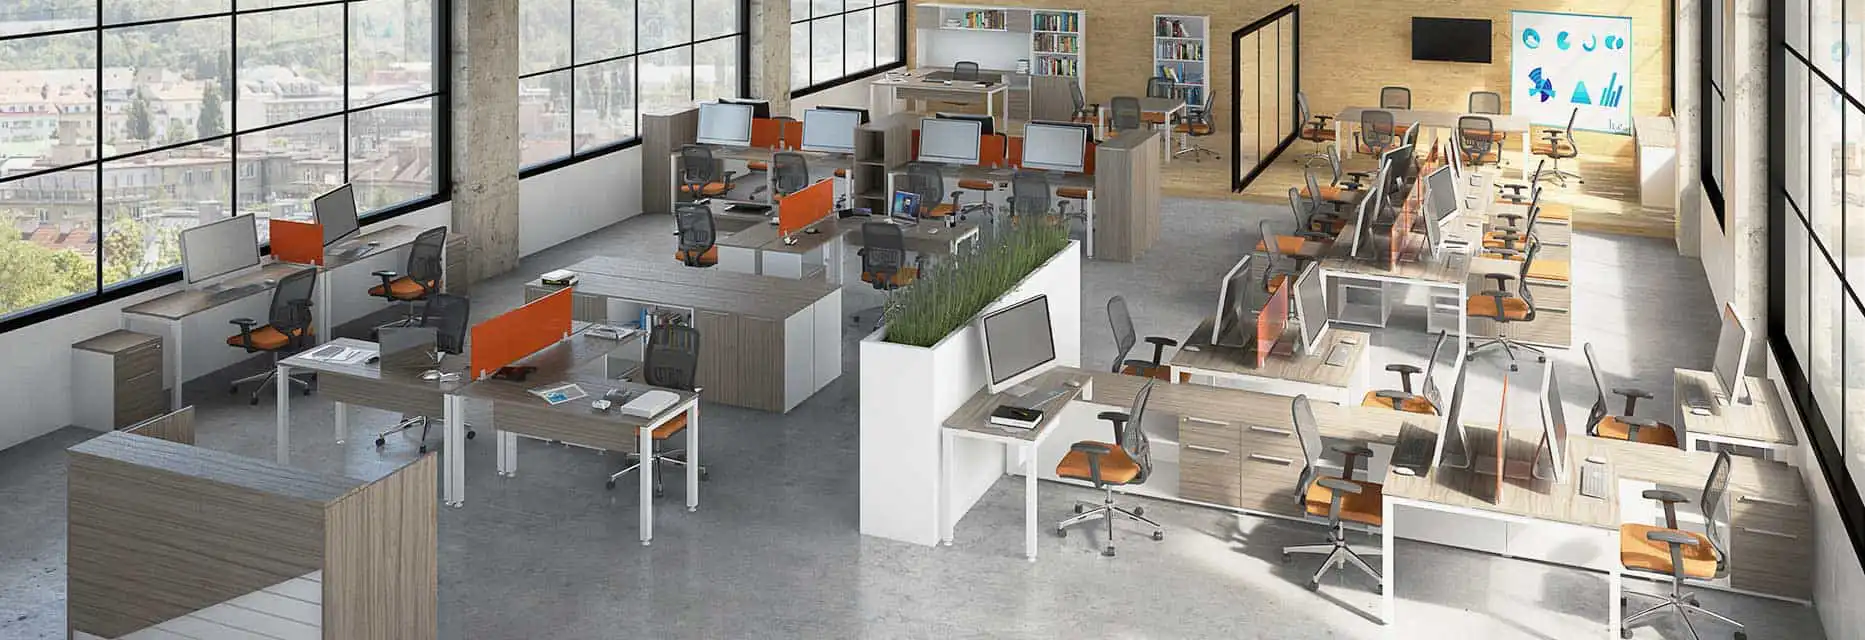 Office furniture – Büromöbel - Mobilier de bureau - Mobili per ufficio - オフィス家具